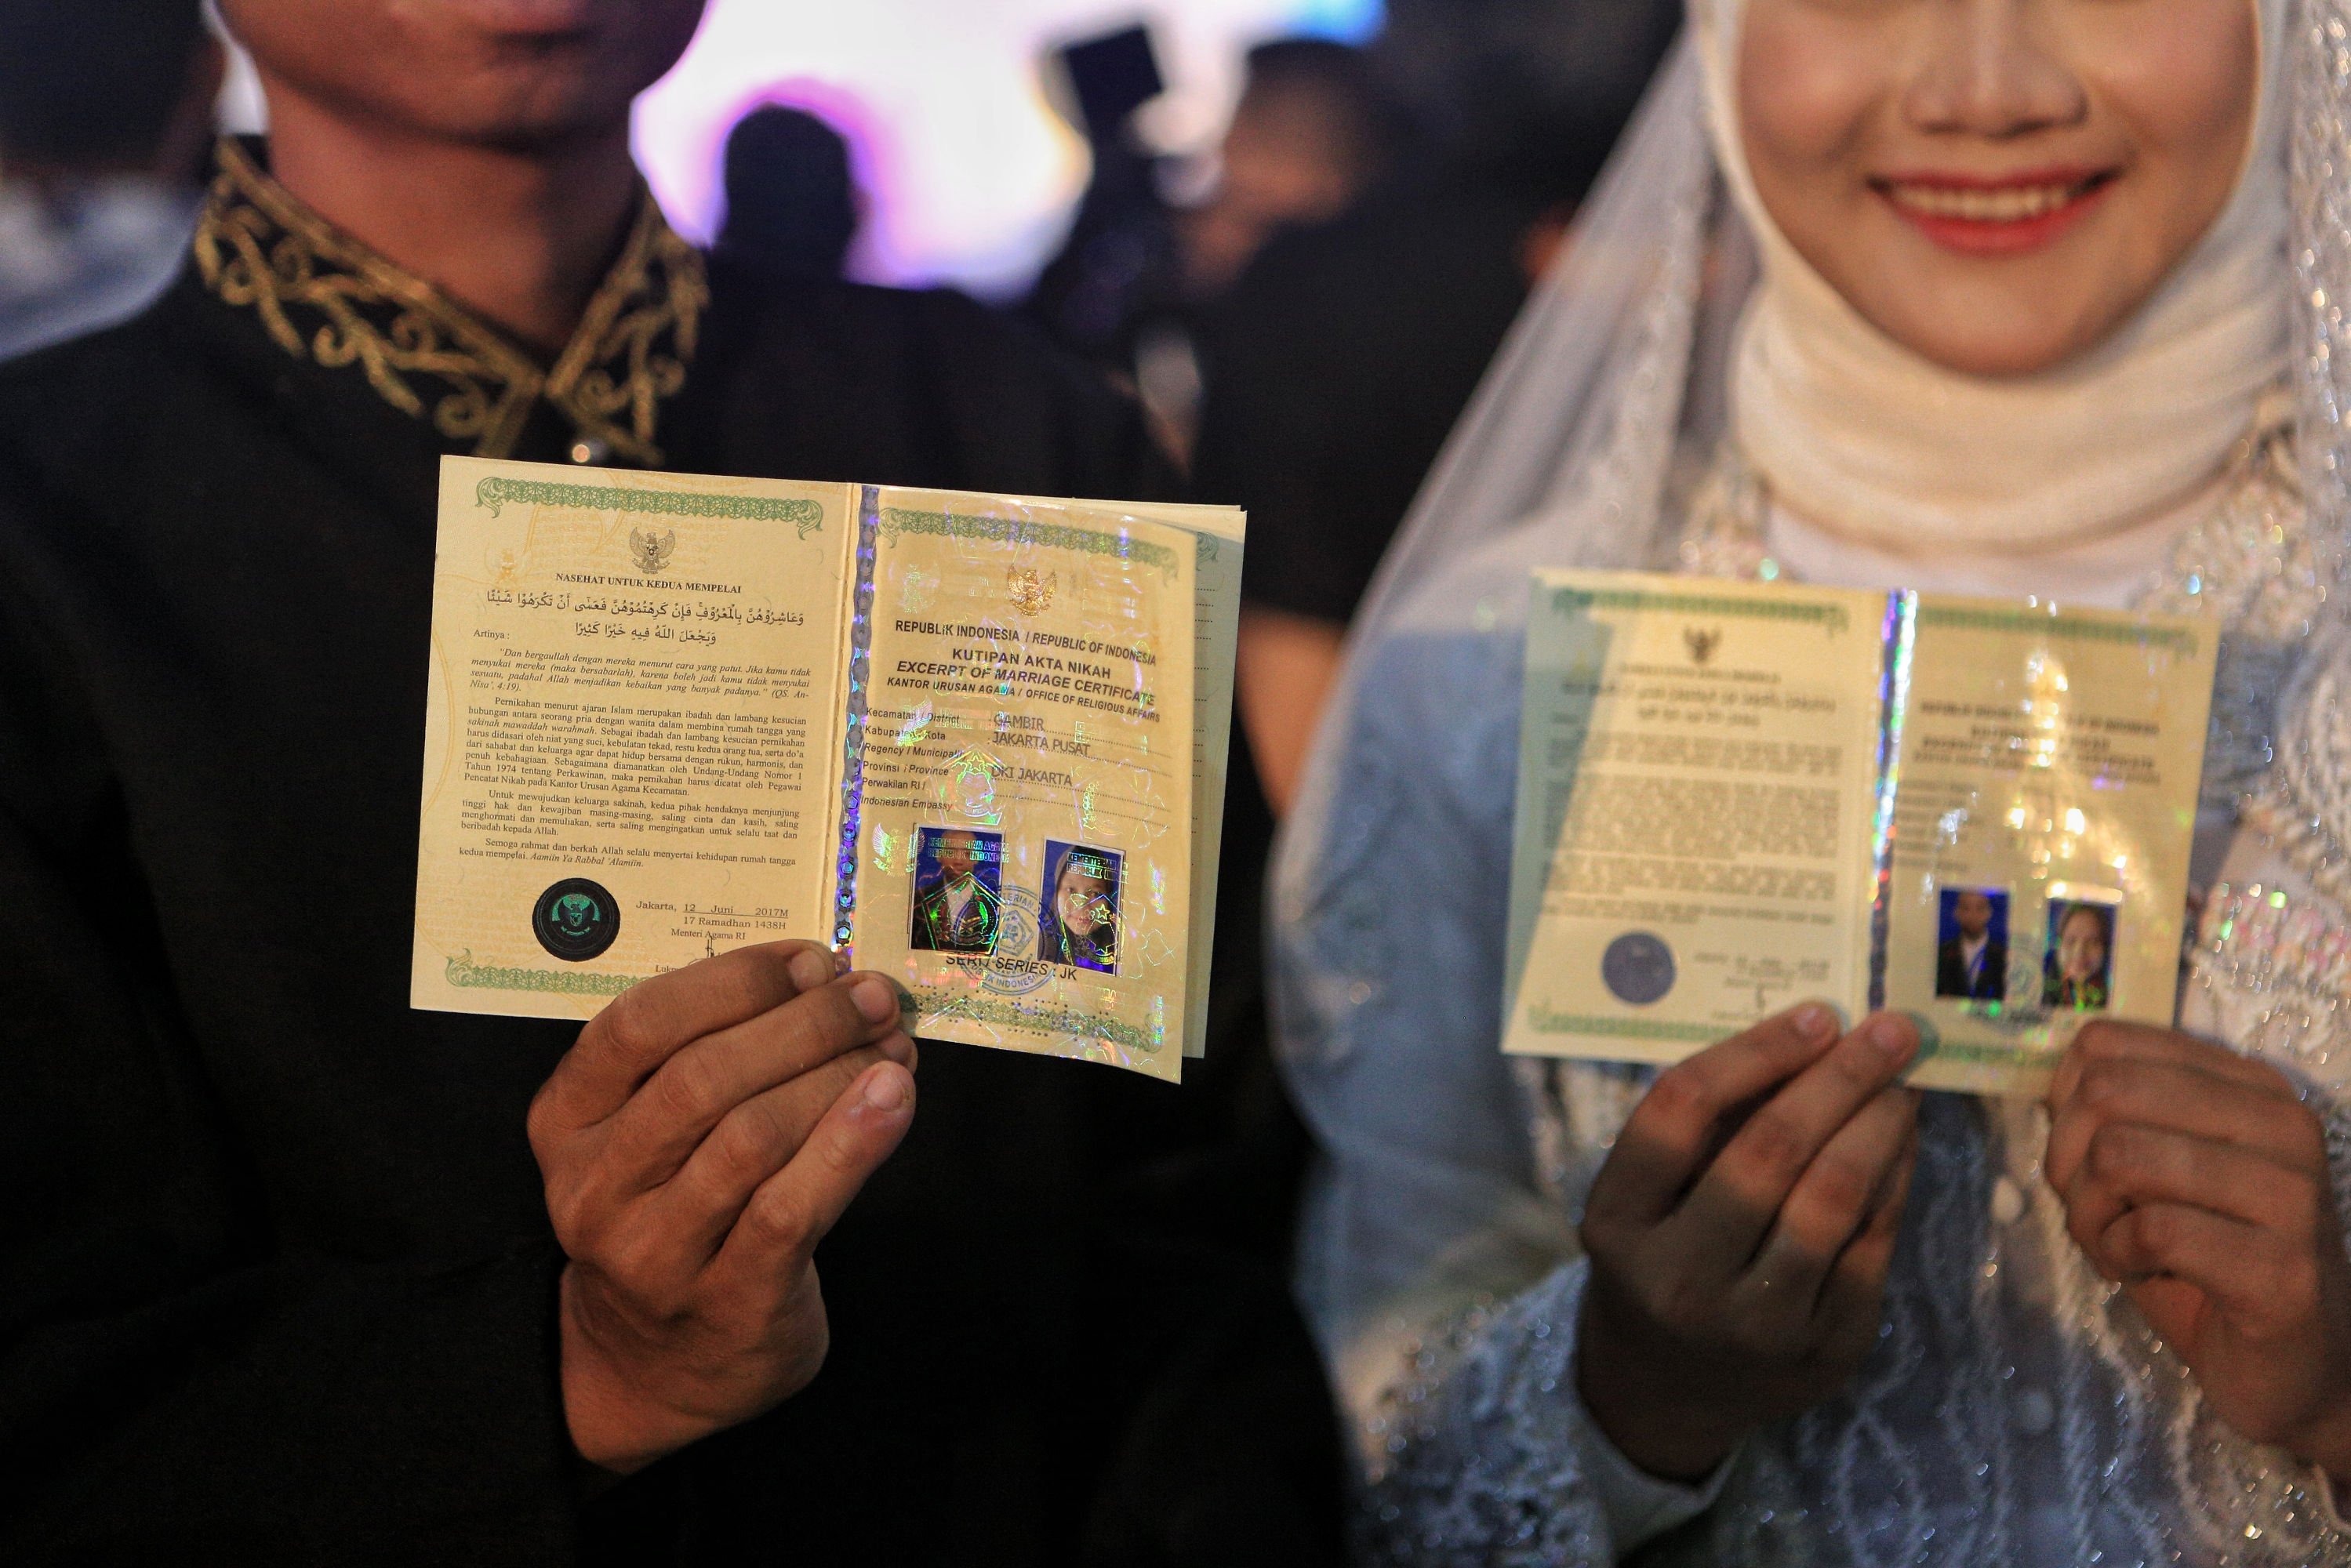 Sebanyak 631 pasangan mengikuti nikah massal dan itsbat (pengesahan pernikahan) massal yang digelar Pemprov DKI Jakarta pada malam pergantian tahun